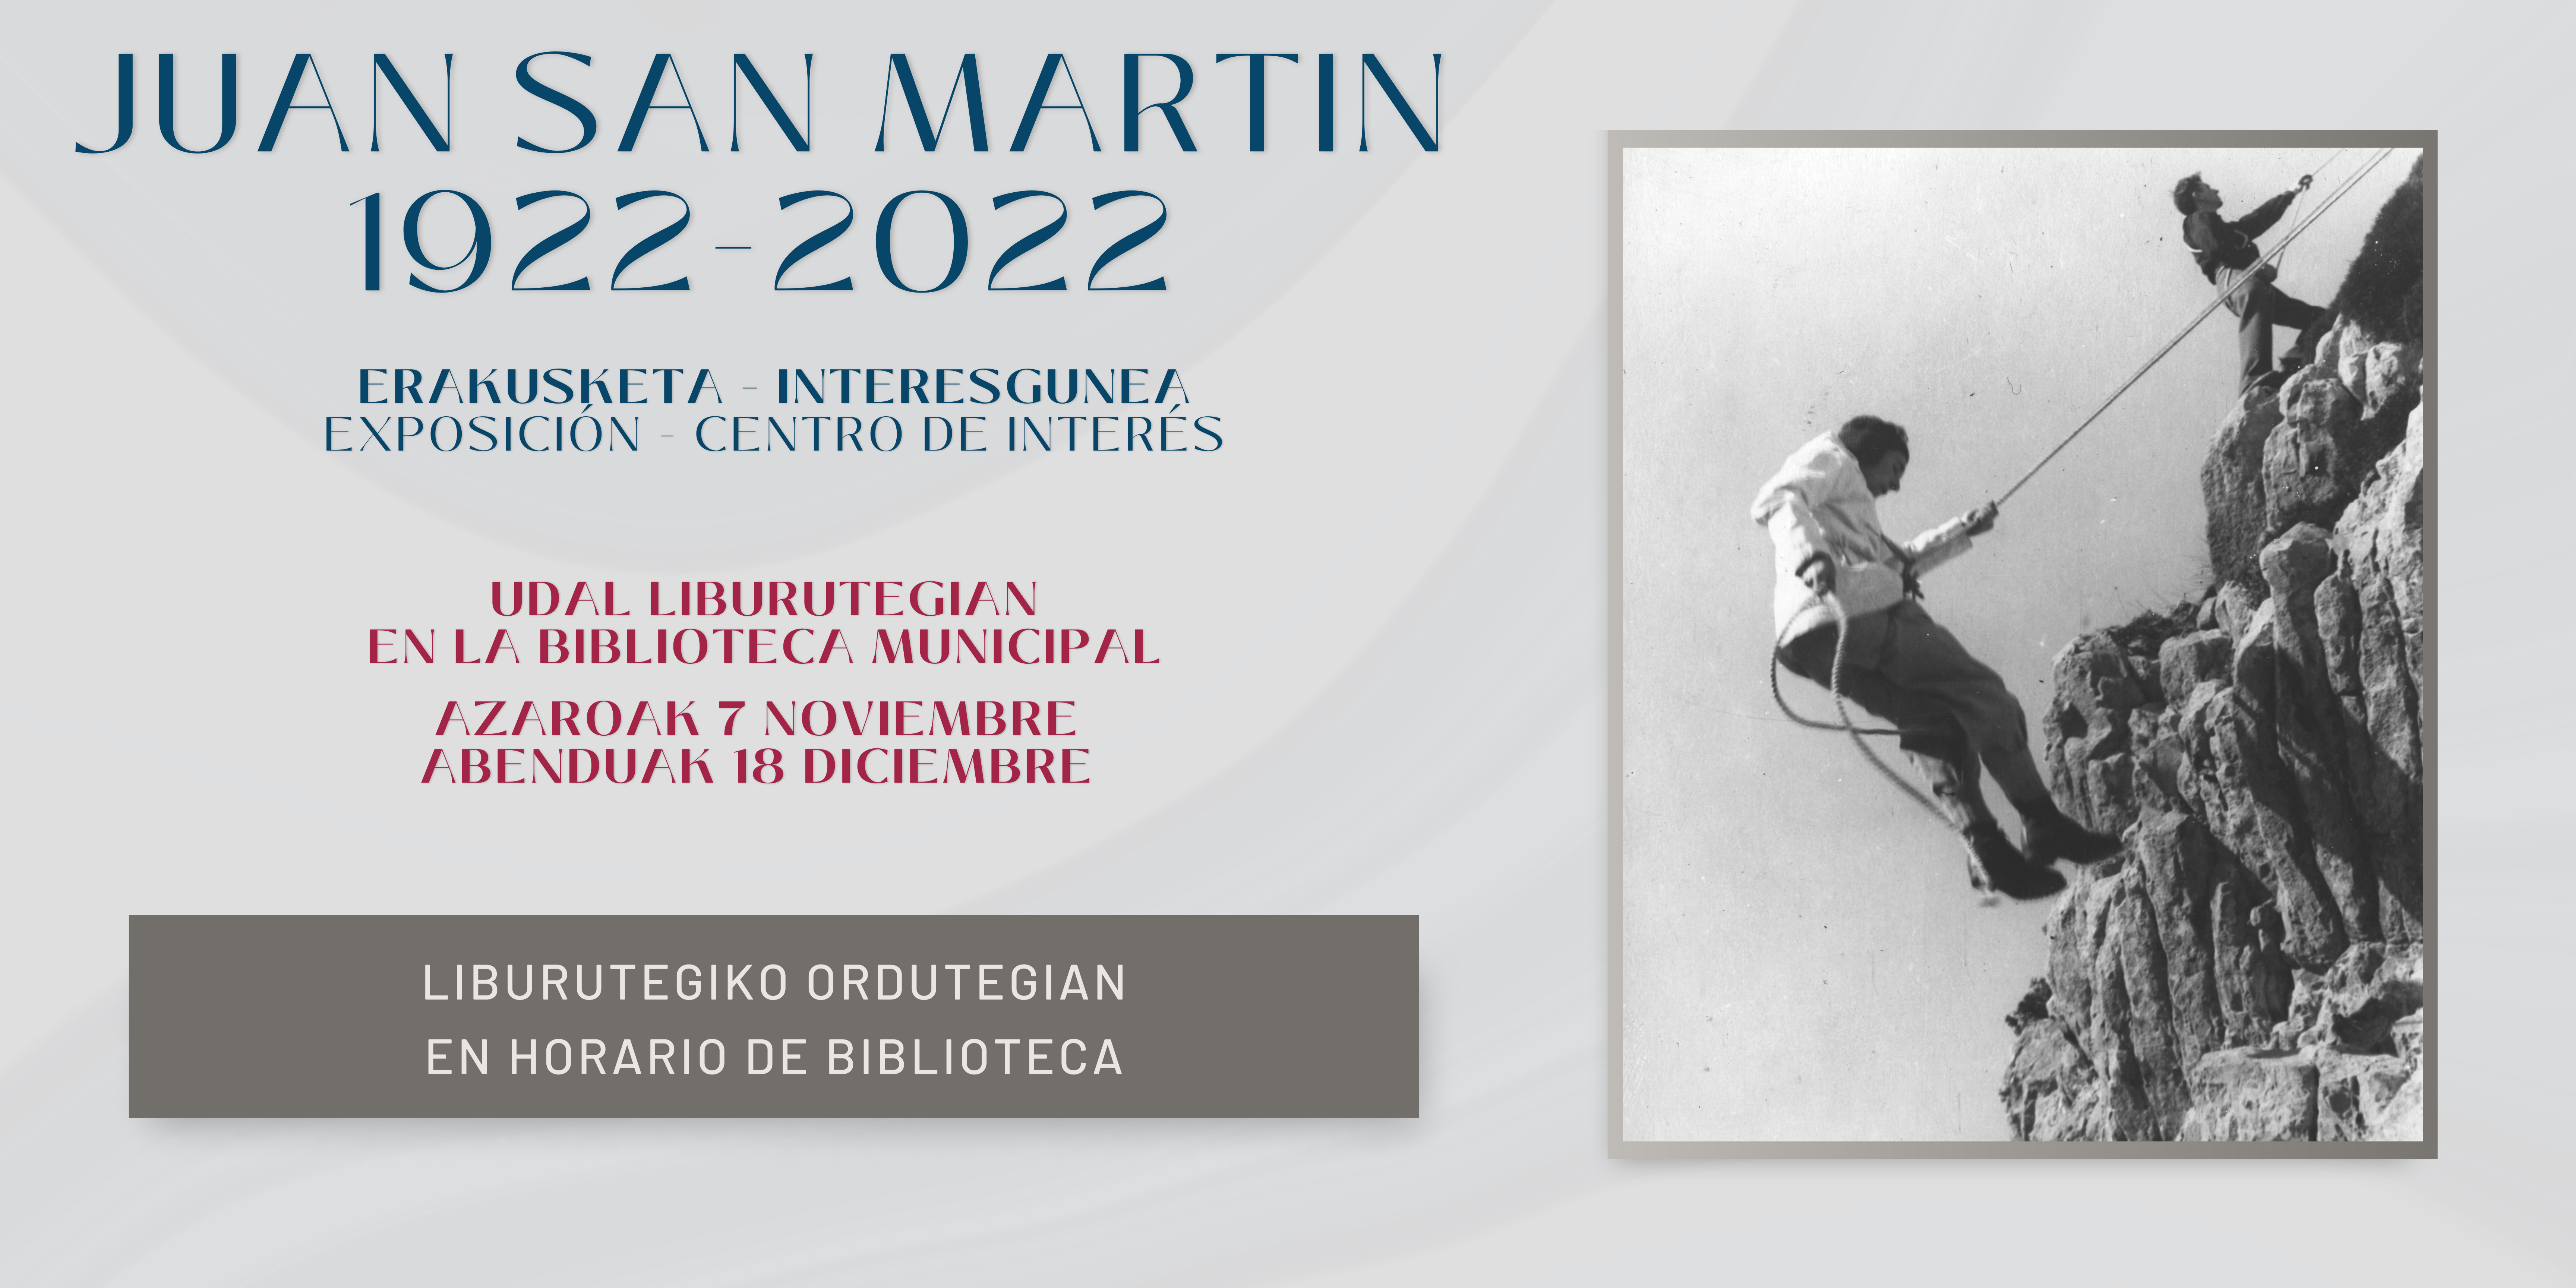 Juan San Martin 1922-2022: erakusketa - interesgunea